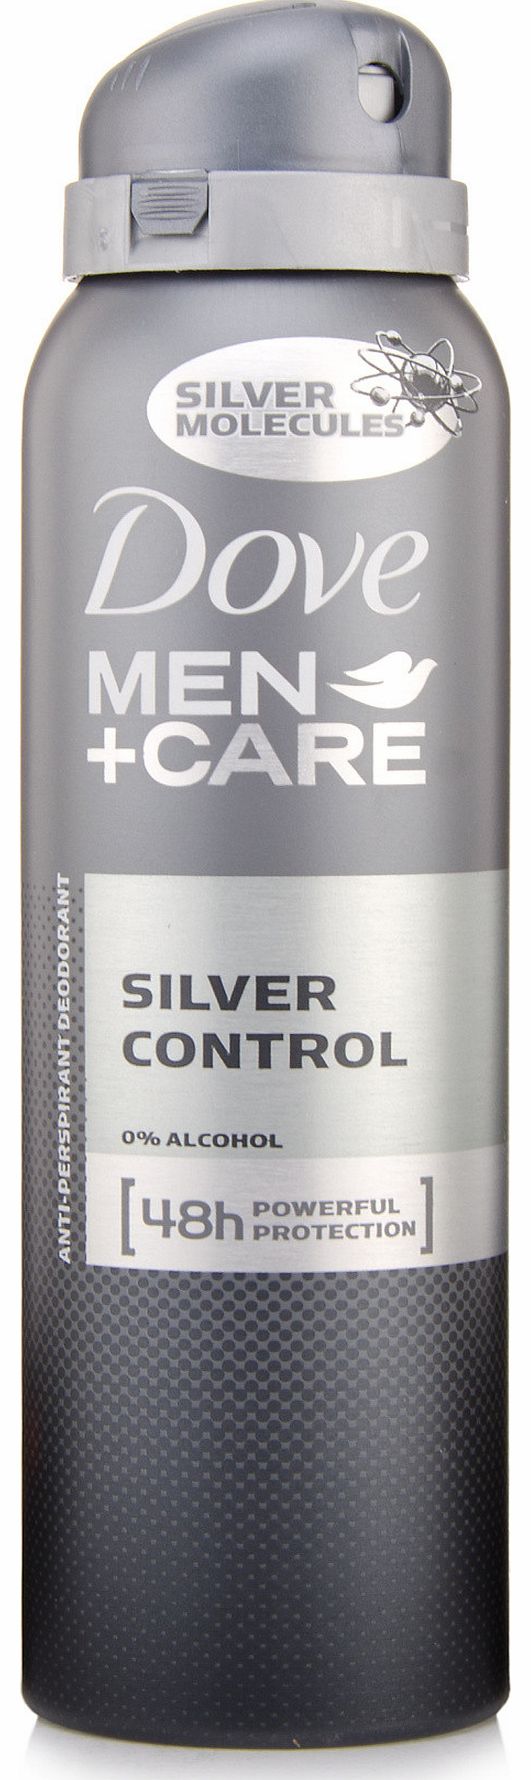 Men+Care Silver Control Anti-Perspirant